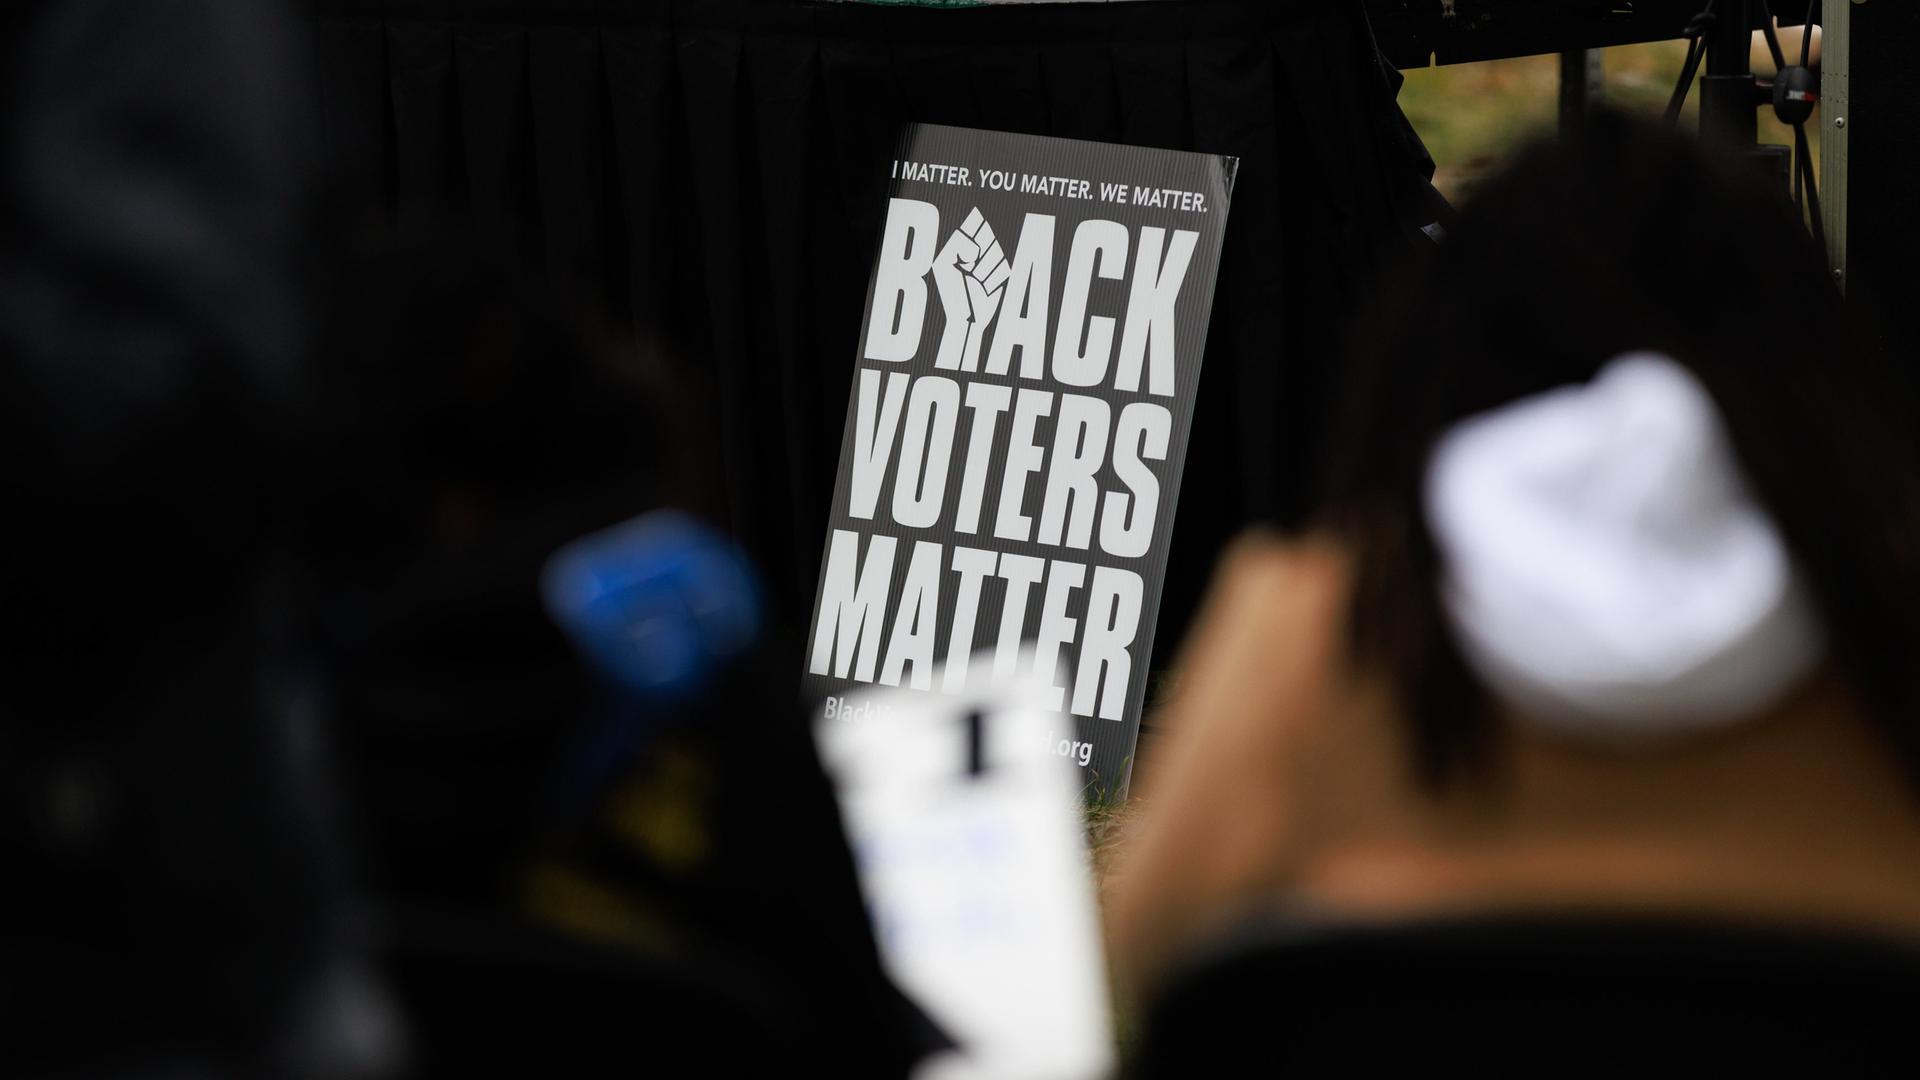 Ein Plakat bei einer Rally trägt die Aufschrift "Black Voters Matter".